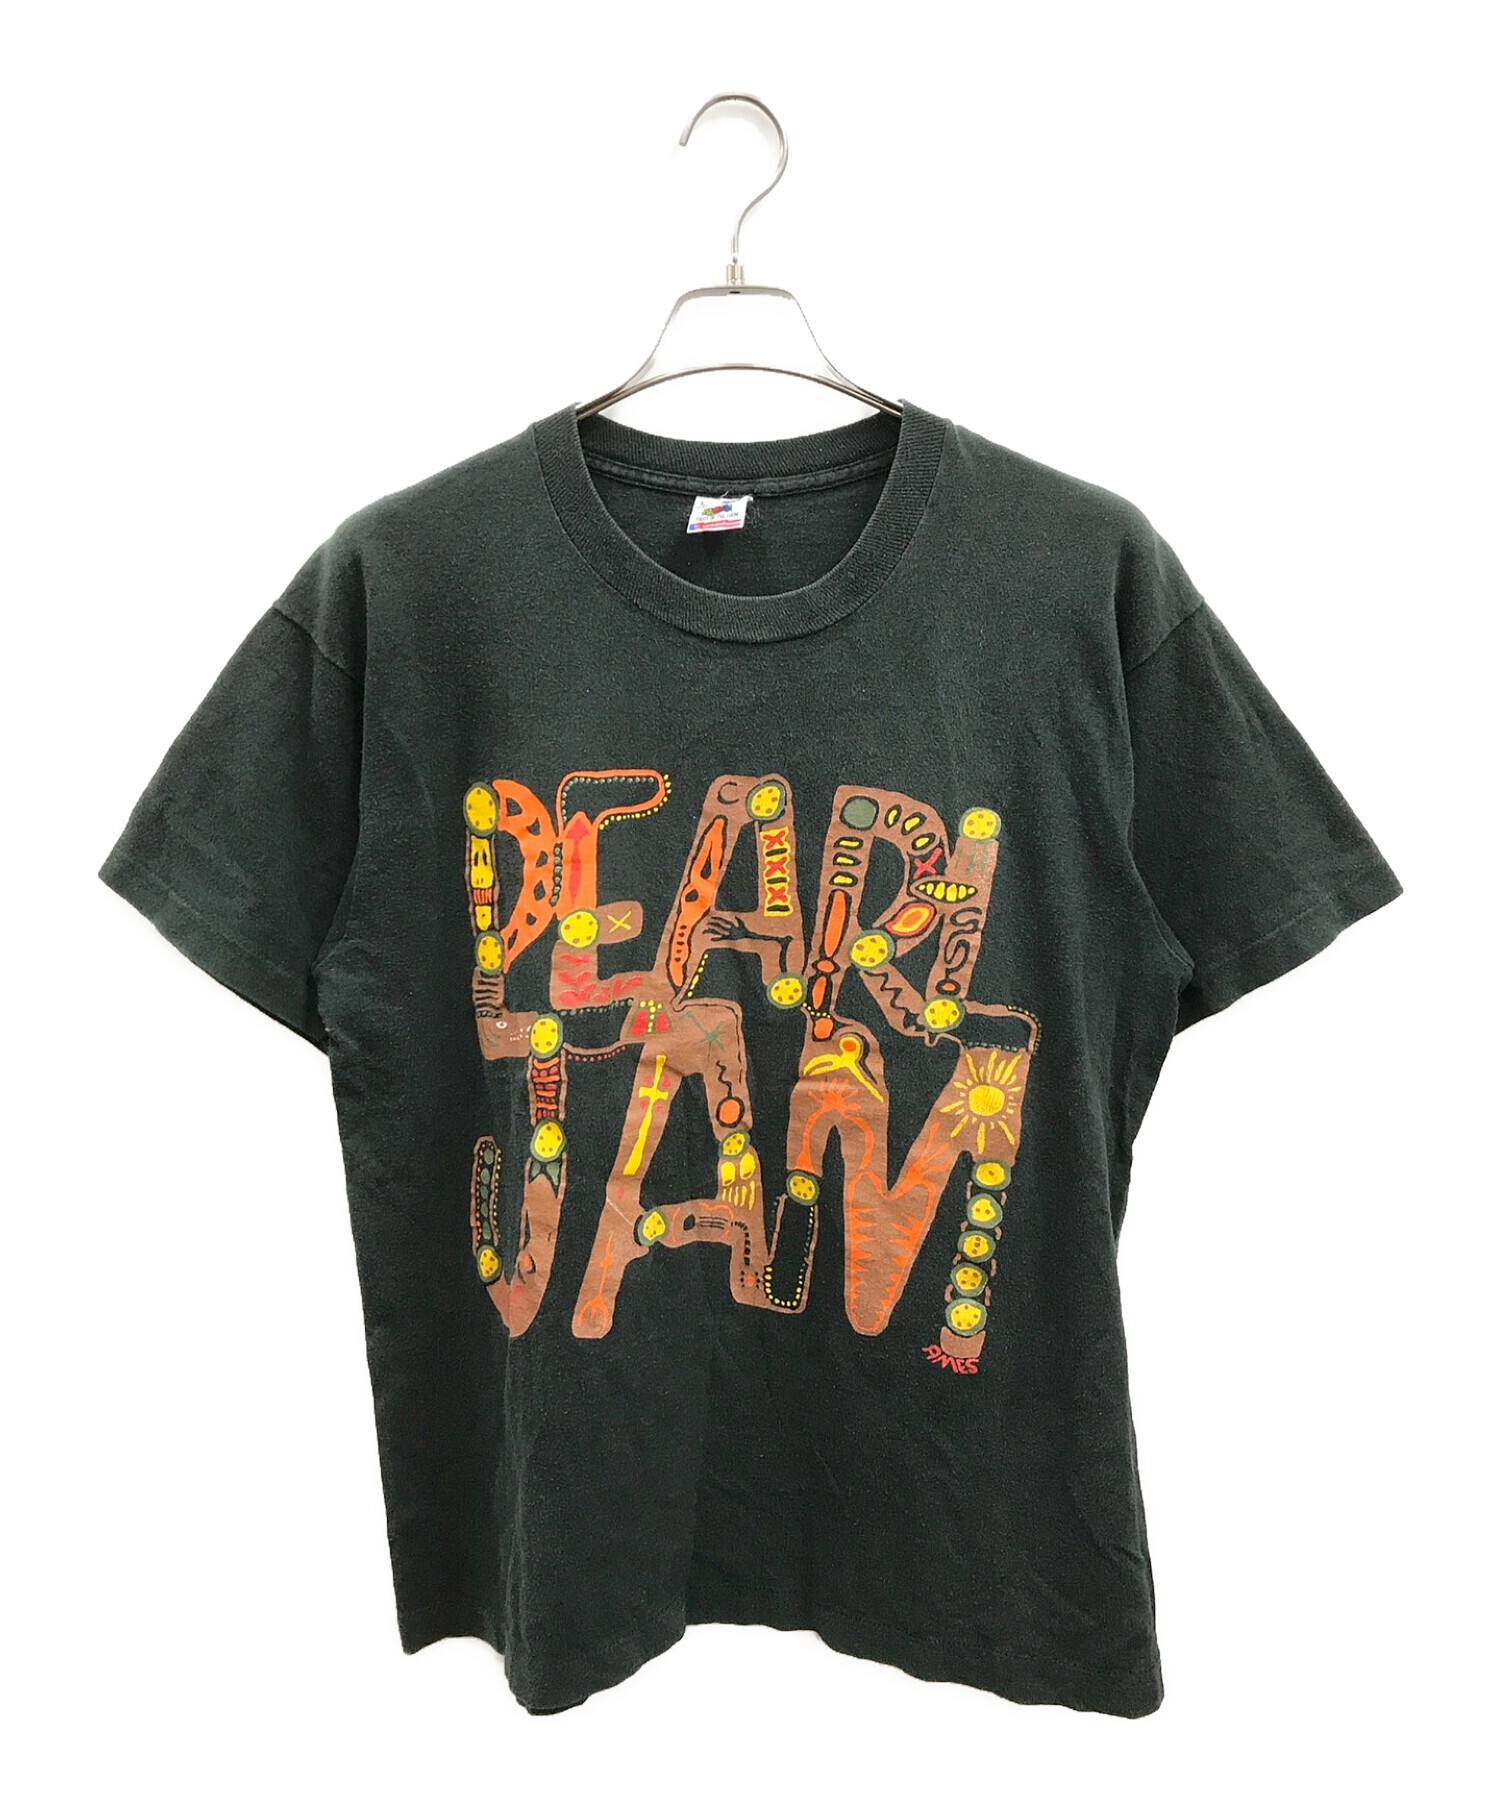 8,000円pearl jam vintage Tシャツ